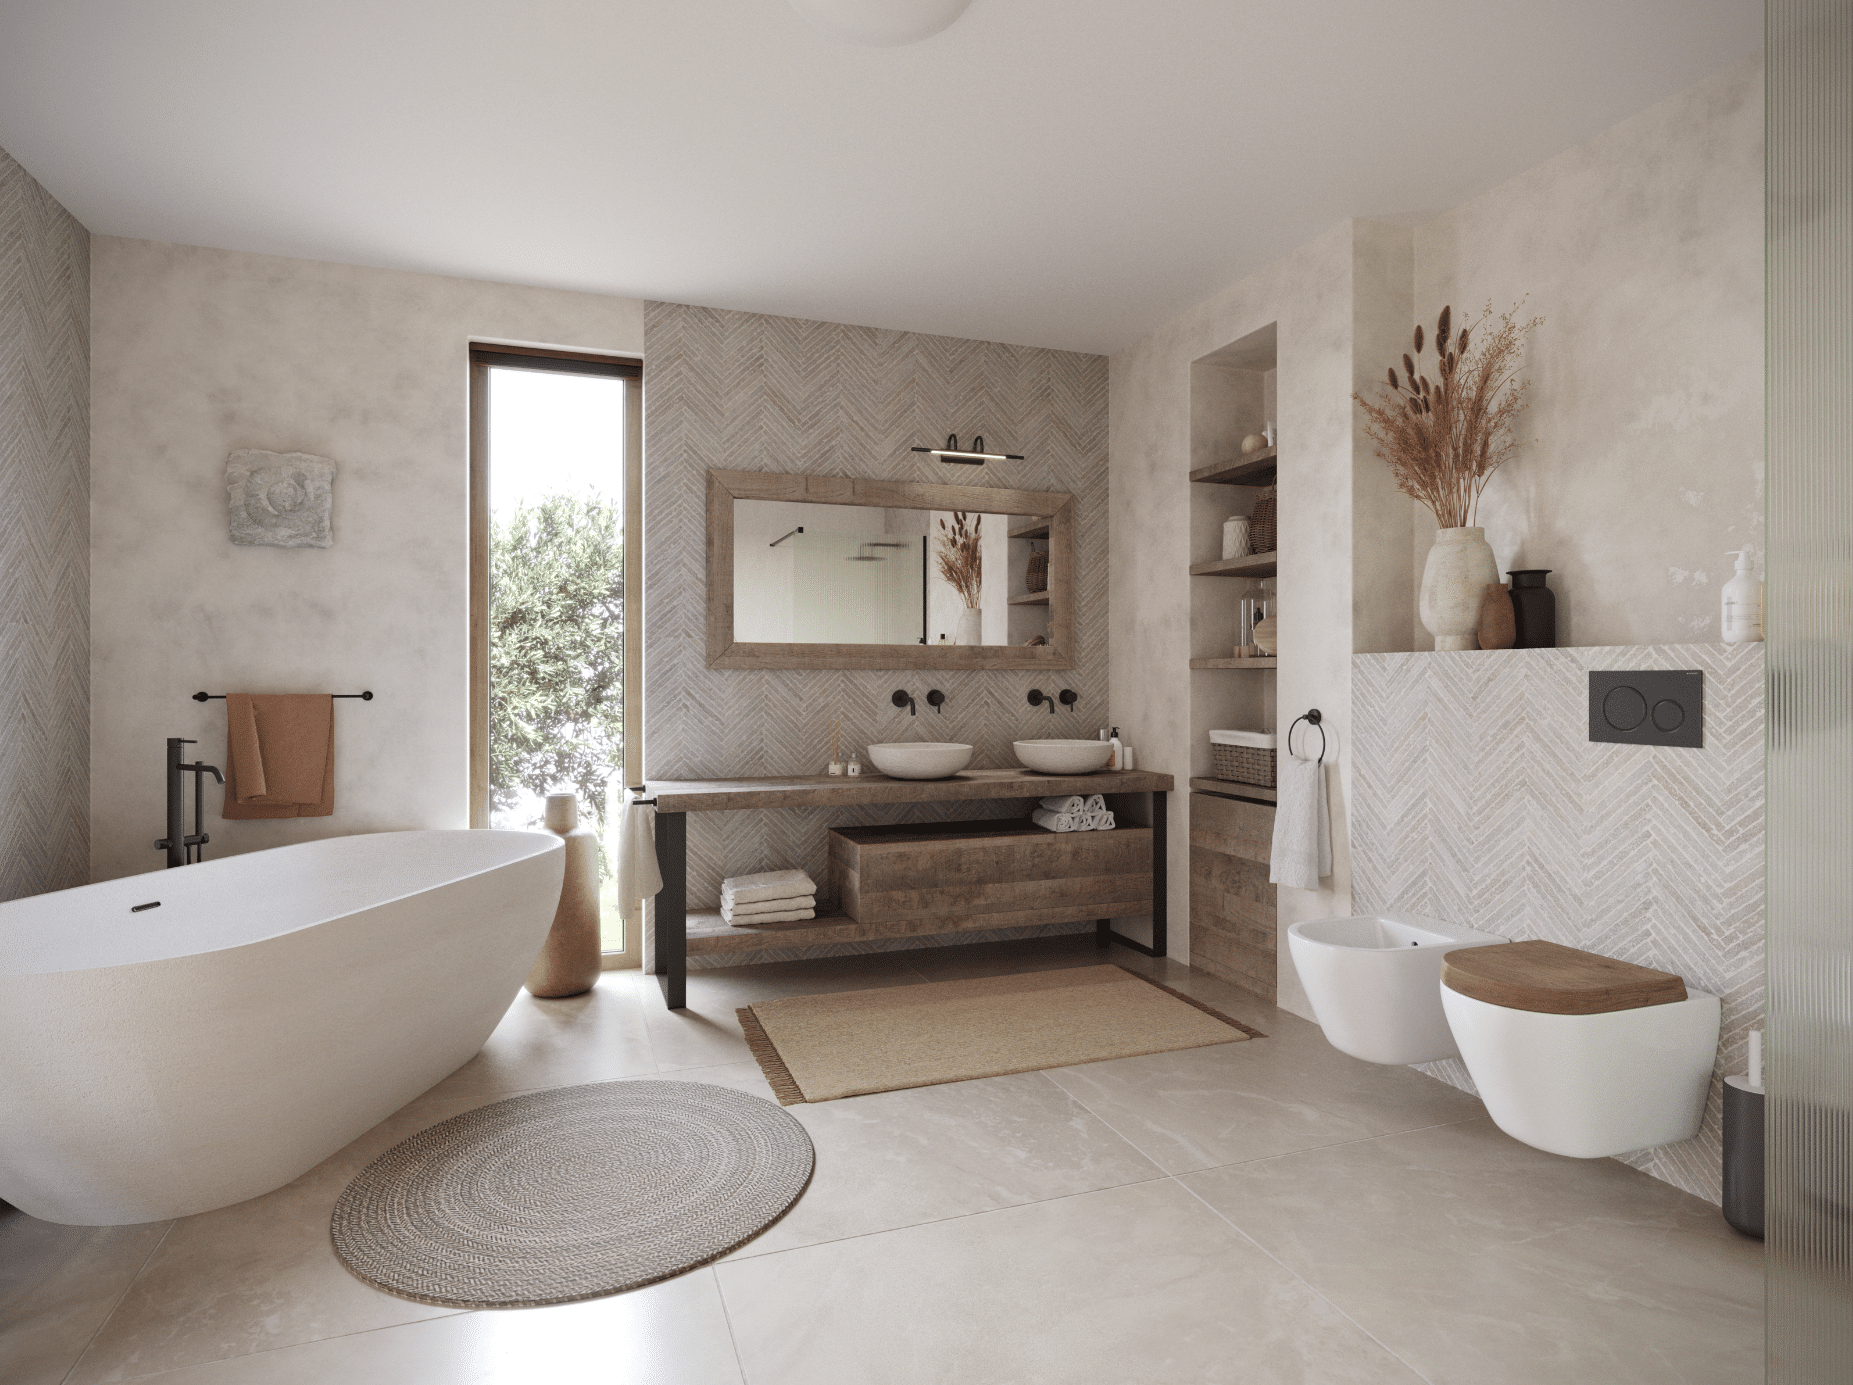 KRONOSPAN zeigt ein Badezimmer in Naturtönen mit einer freistehenden Badewanne, einem Waschtisch aus Holz und freiliegenden Teppichen auf dem Fliesenboden.